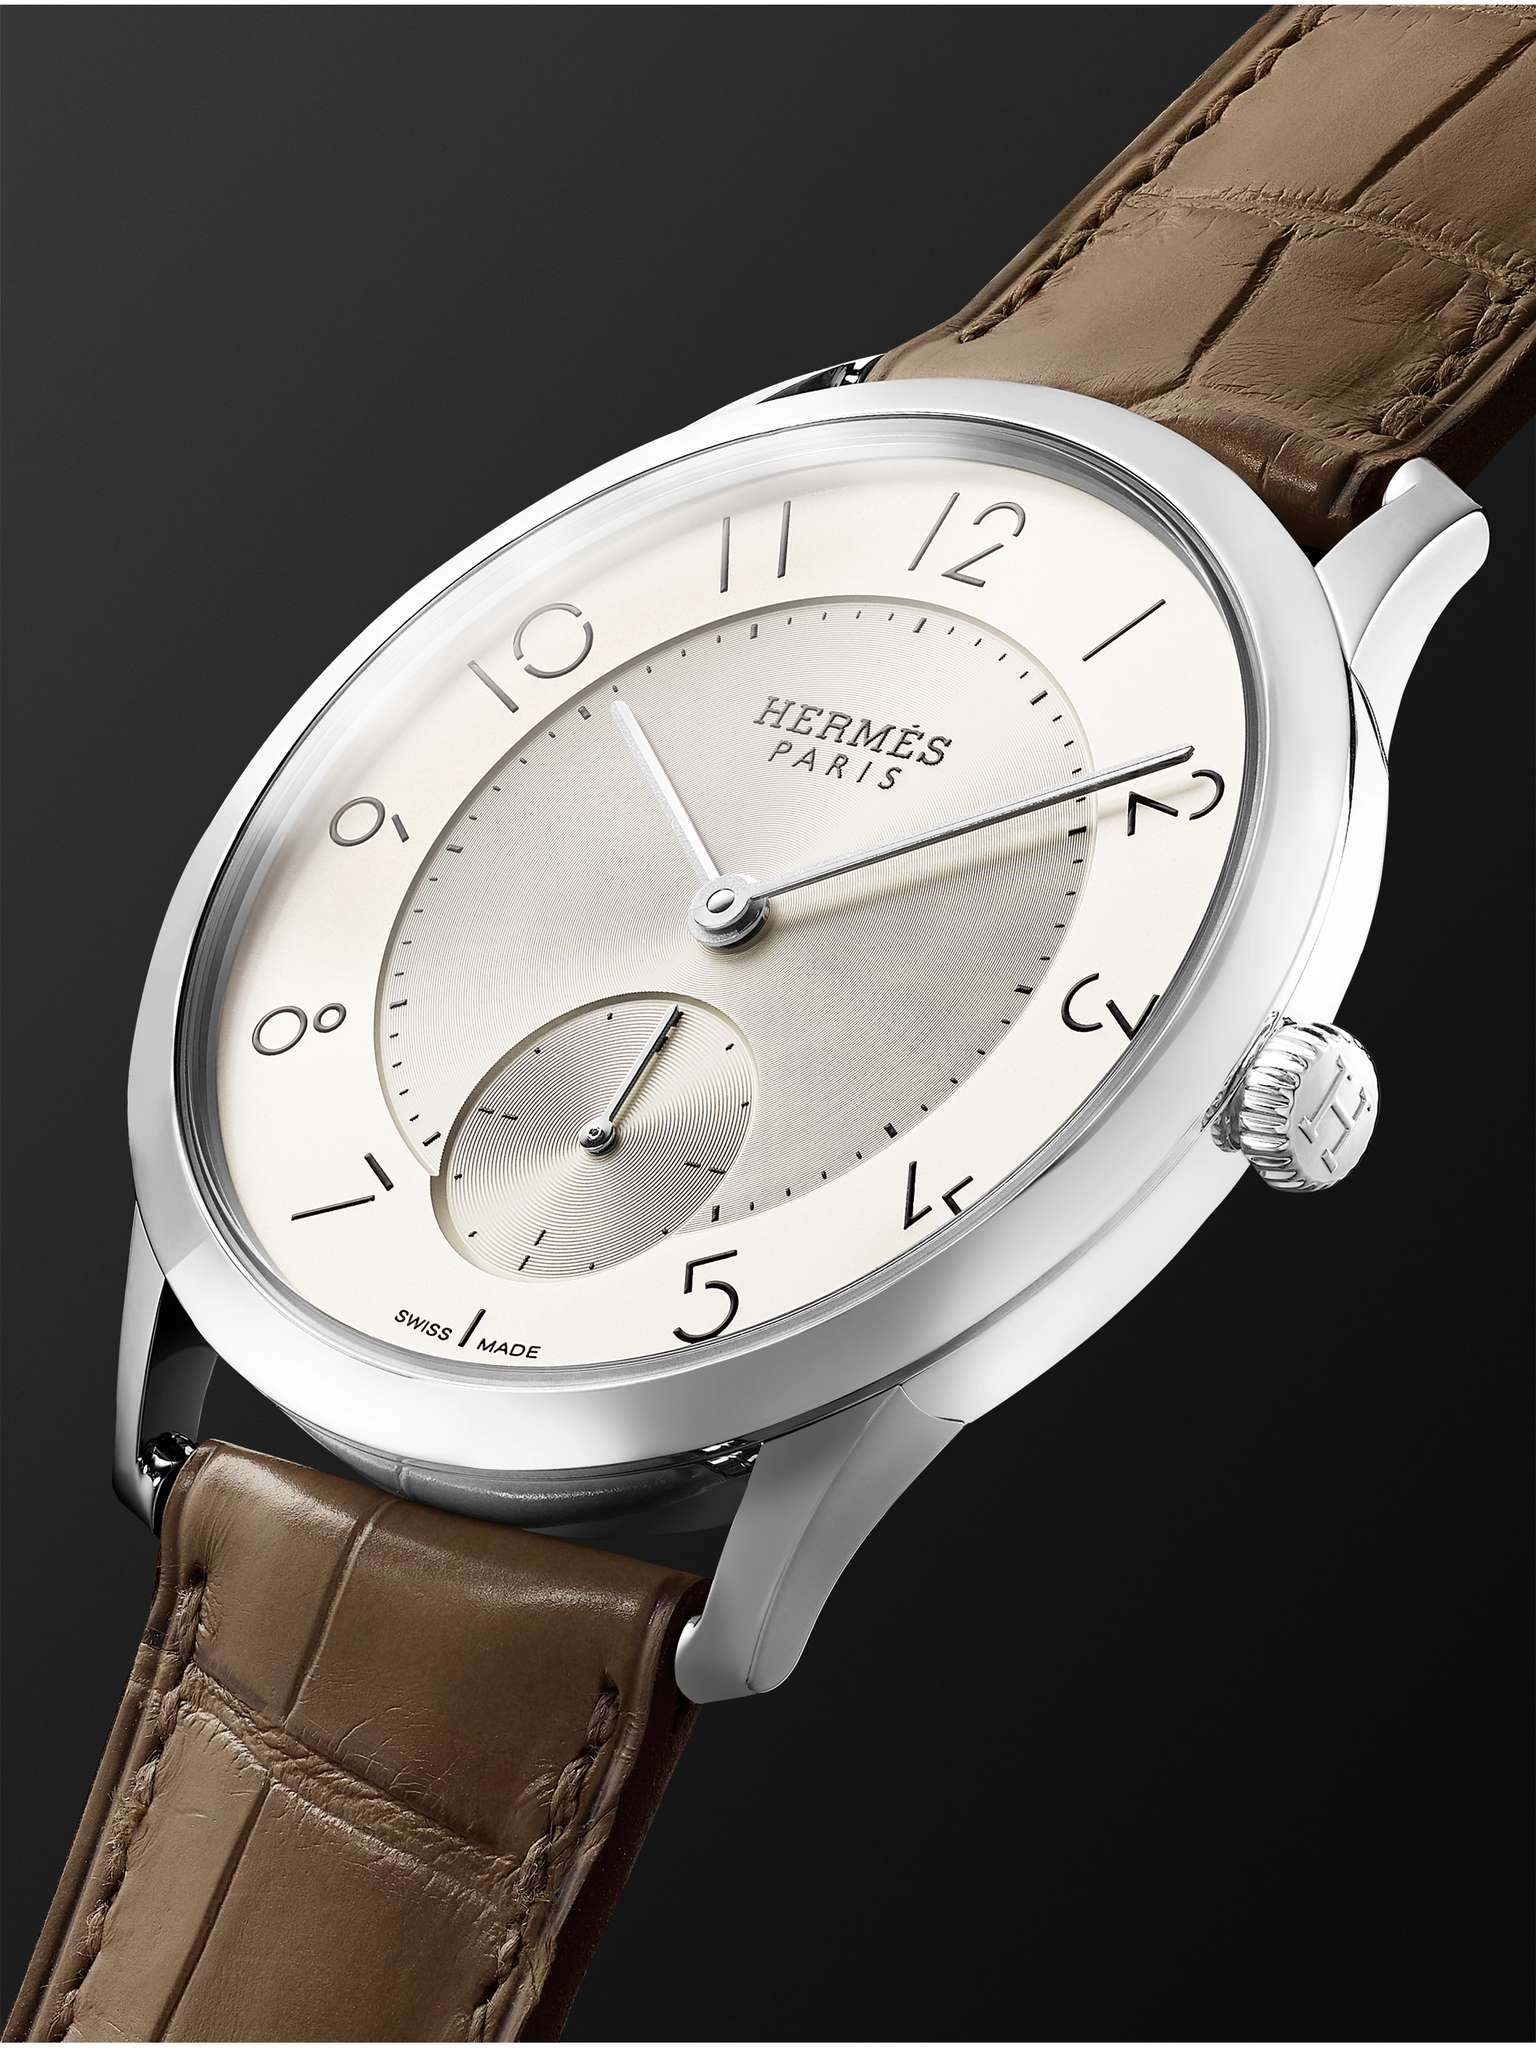 Slim d'Hermès Acier Automatic 39.5mm Stainless Steel and Alligator Watch, Ref. No. W045266WW00 - 4